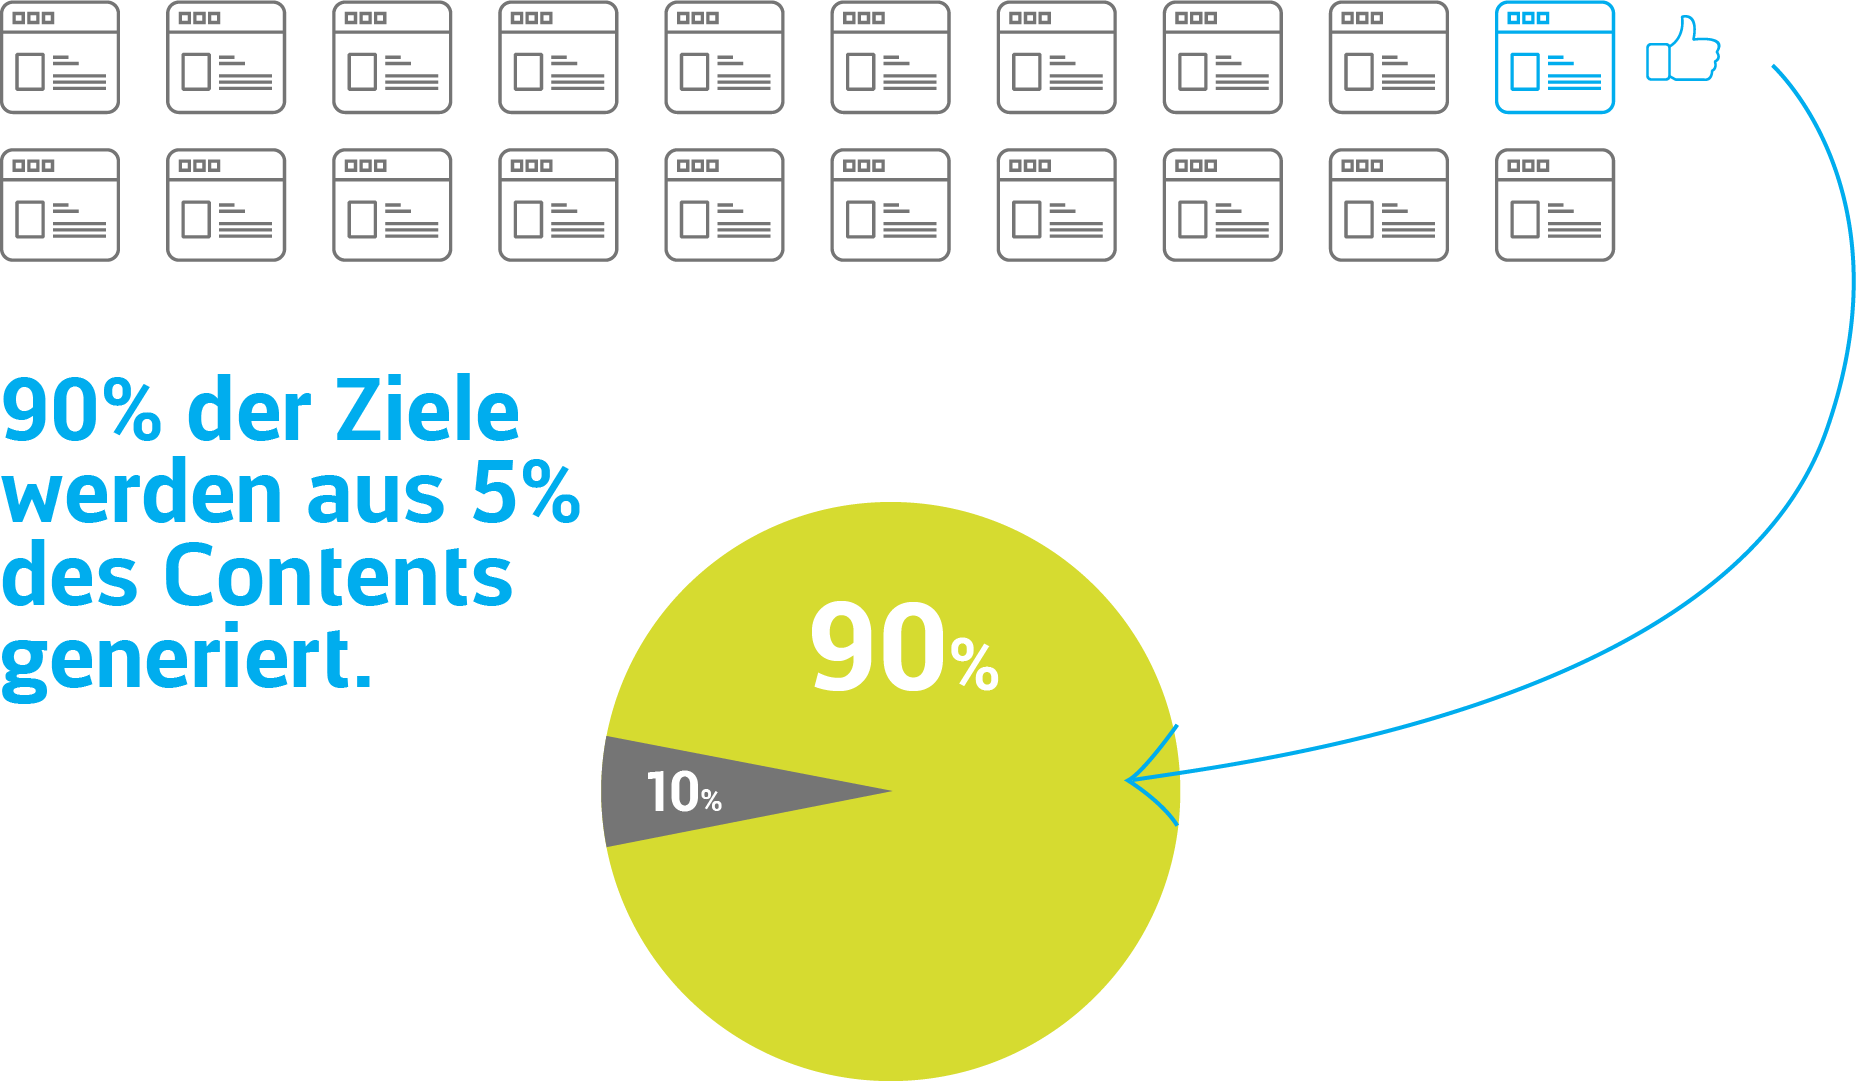 90% der Content Marketing Ziele werden aus 5% des Contents generiert.